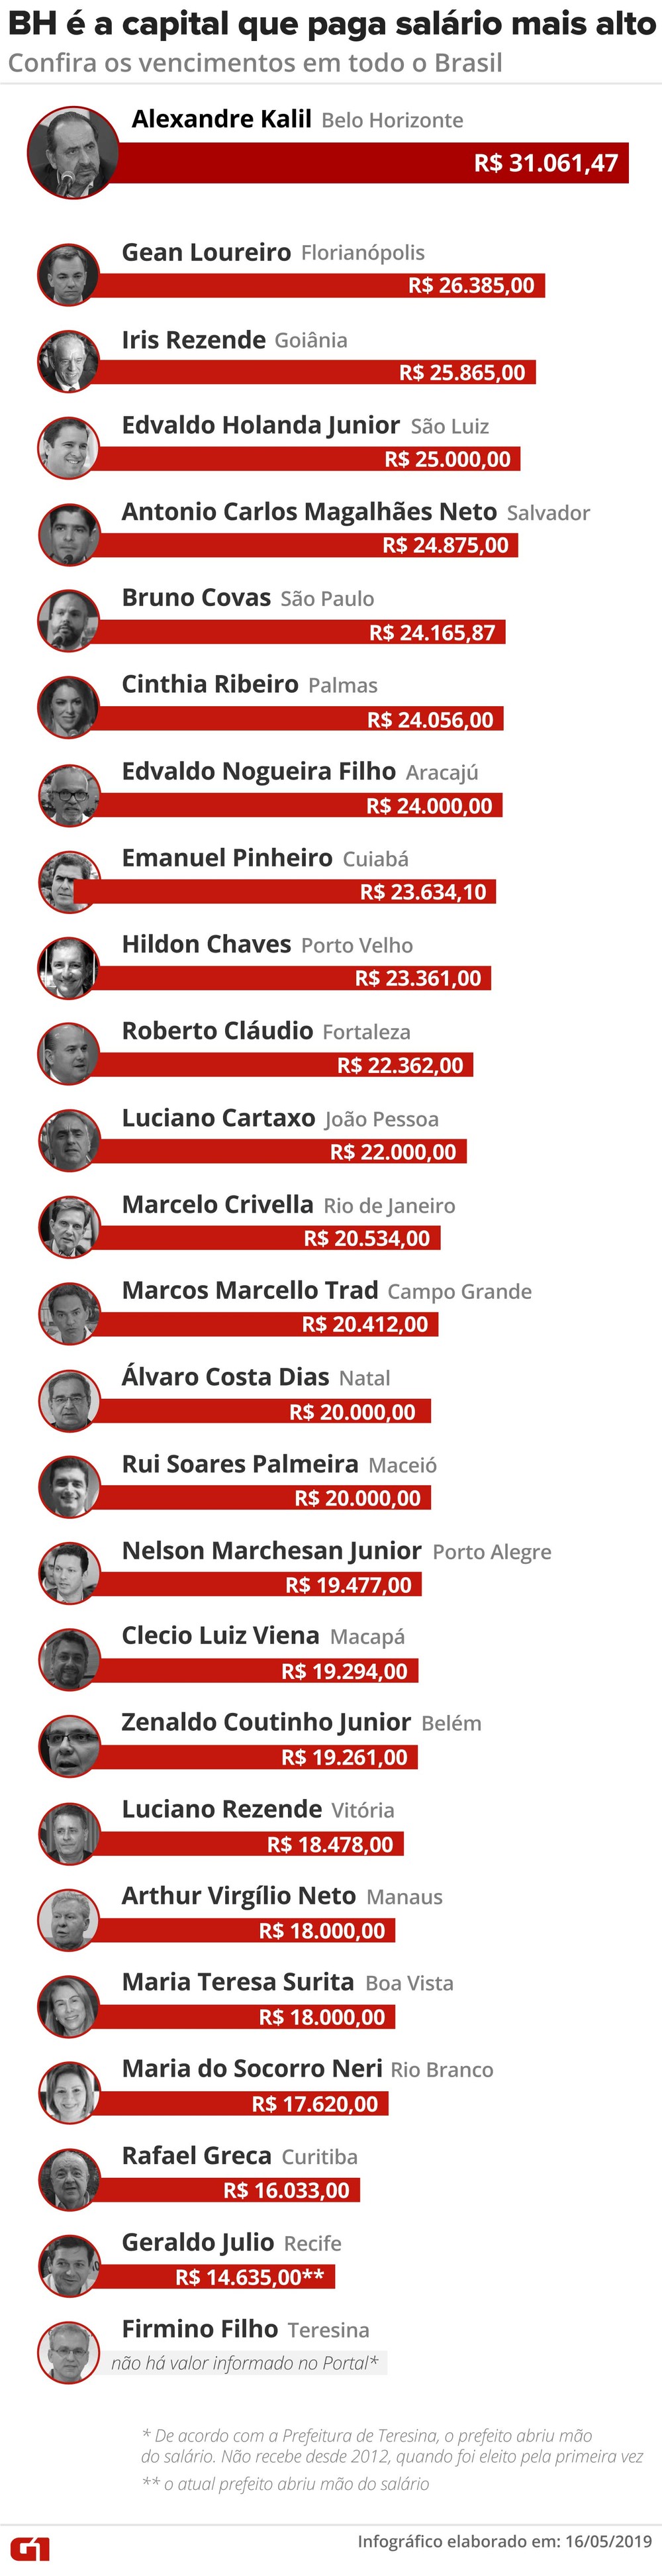 Confira lista com valor de salário dos prefeitos das capitais do país - Imagem 2